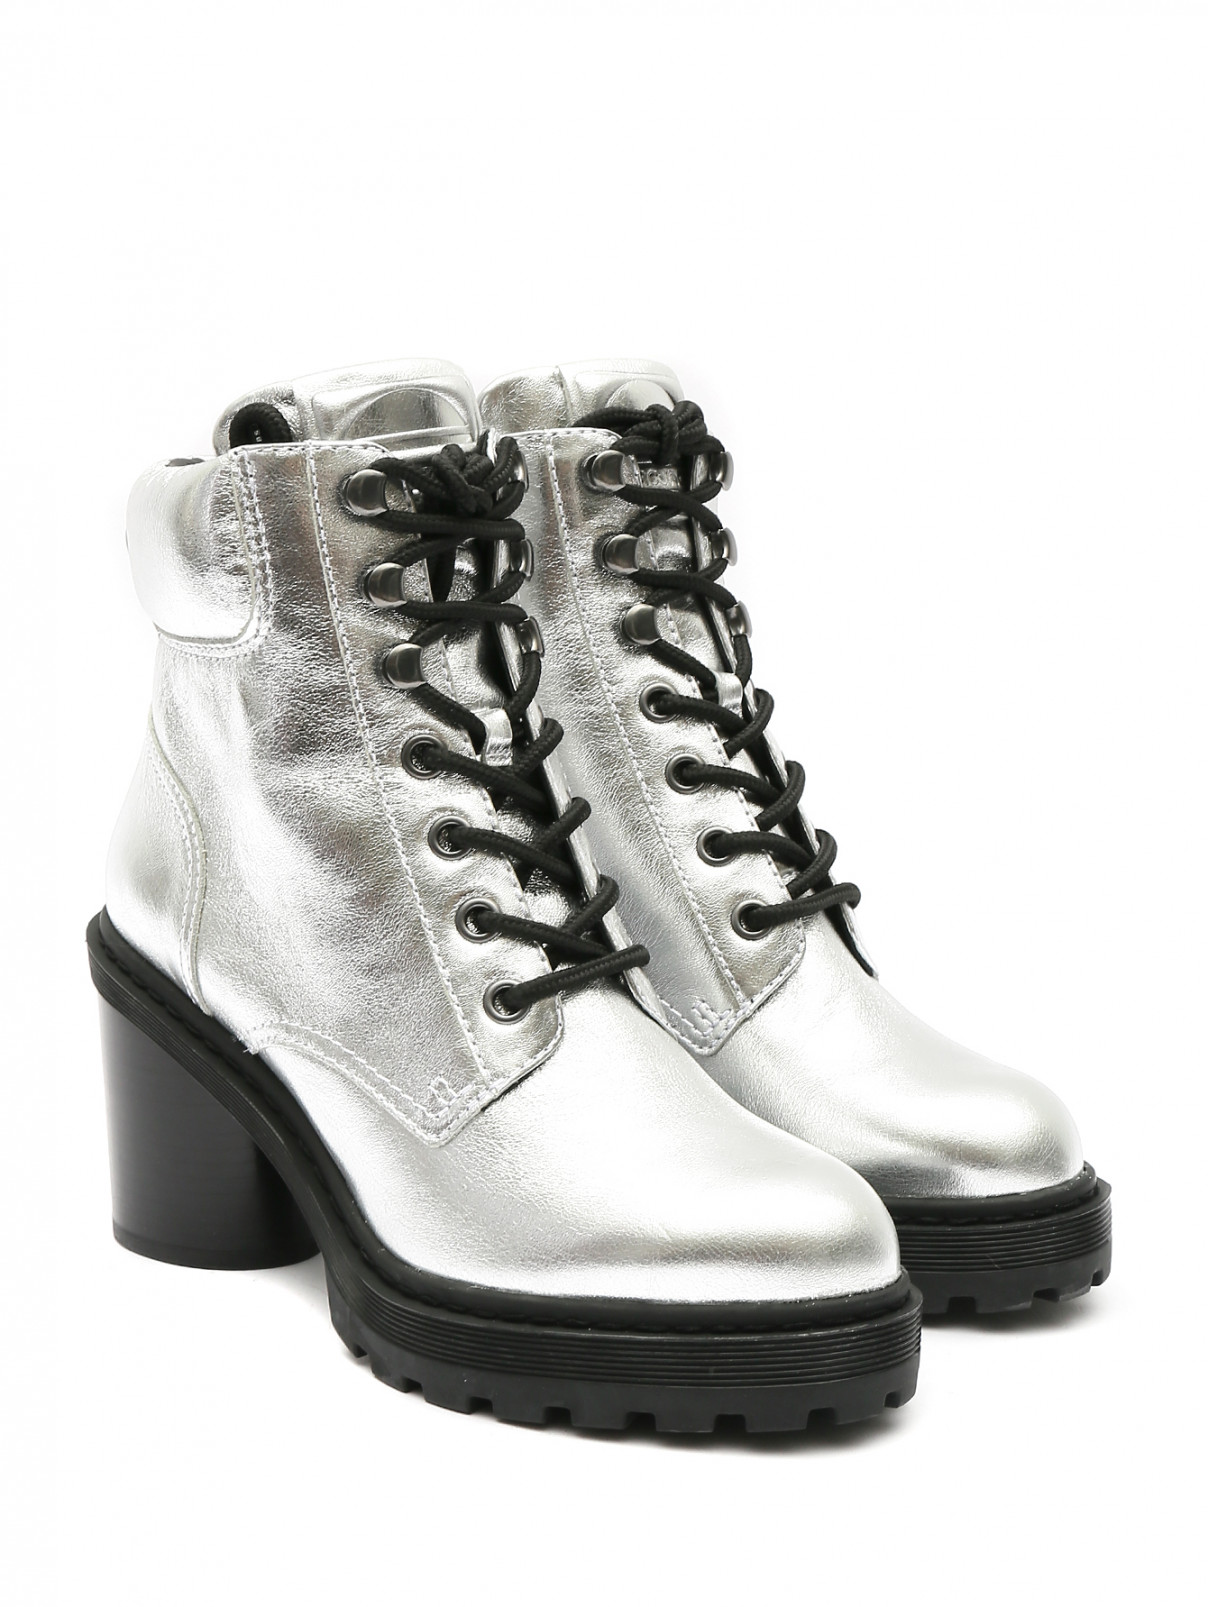 Ботильоны из кожи металлик на устойчивом каблуке Marc Jacobs  –  Общий вид  – Цвет:  Серый